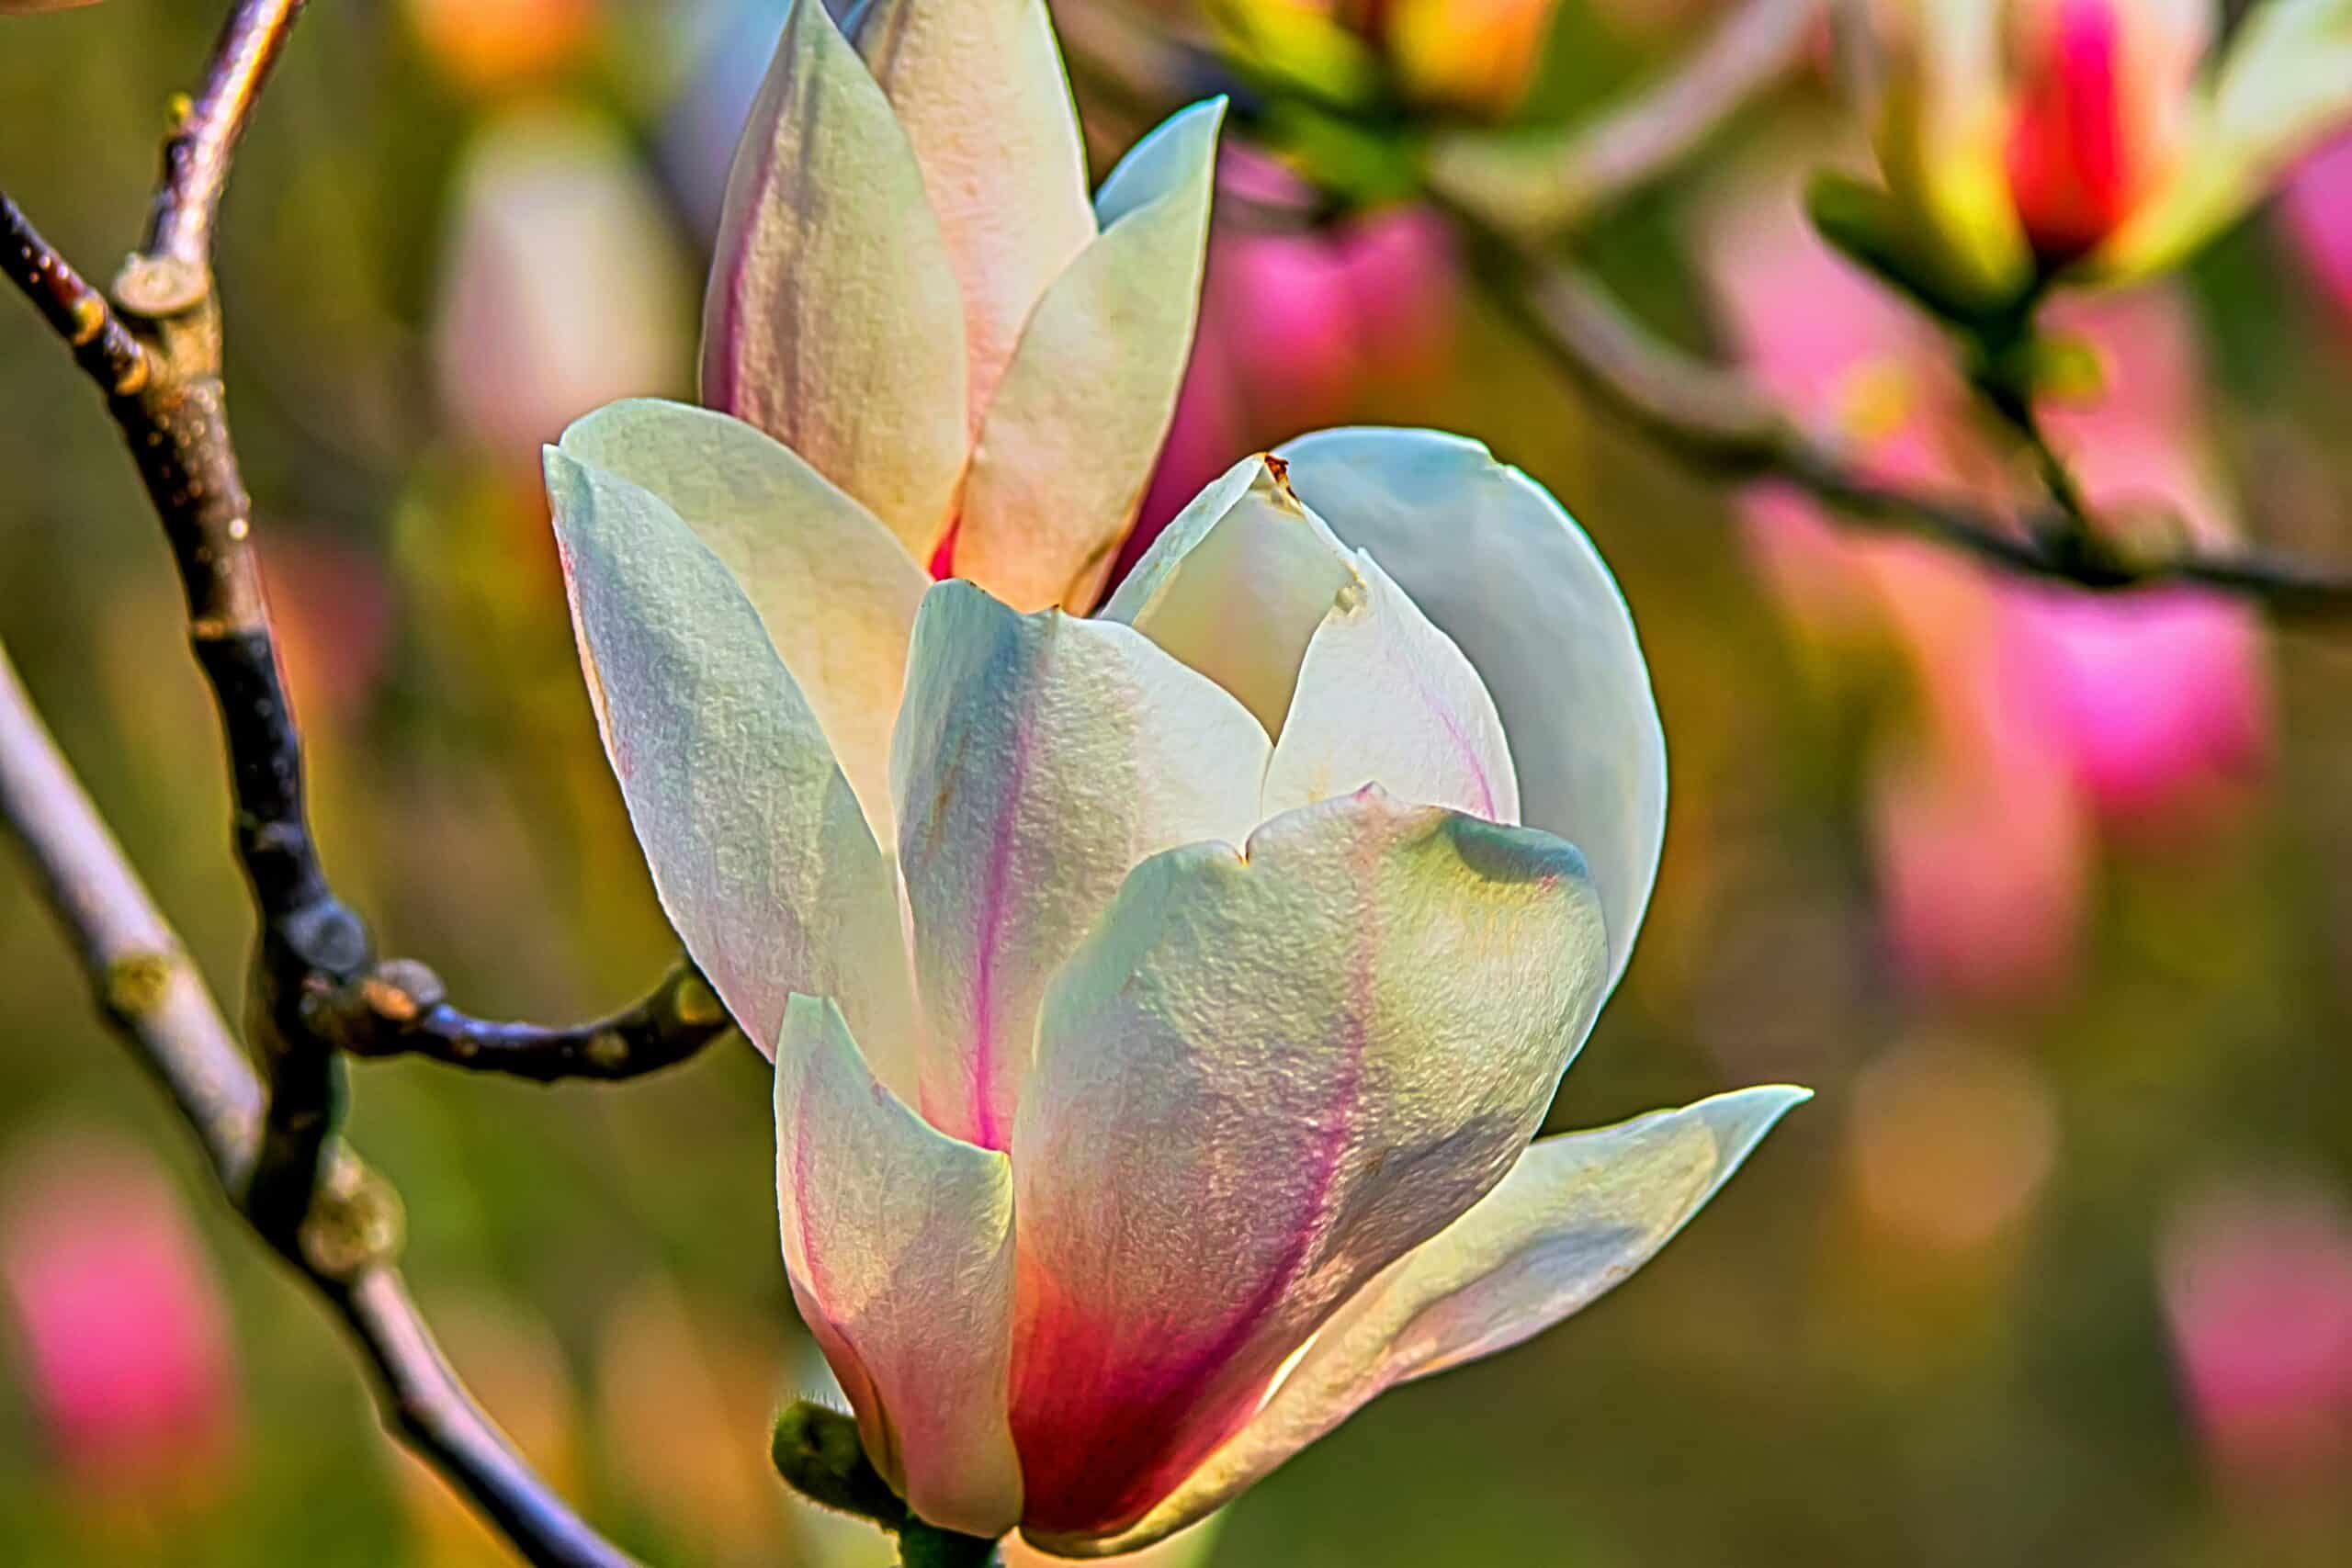 objavte krásu magnólií s ich úžasnými kvetmi a pôsobivým vzrastom. zoznámte sa s rôznymi odrodami, tipmi na výsadbu a technikami starostlivosti o tieto ikonické kvitnúce stromy.